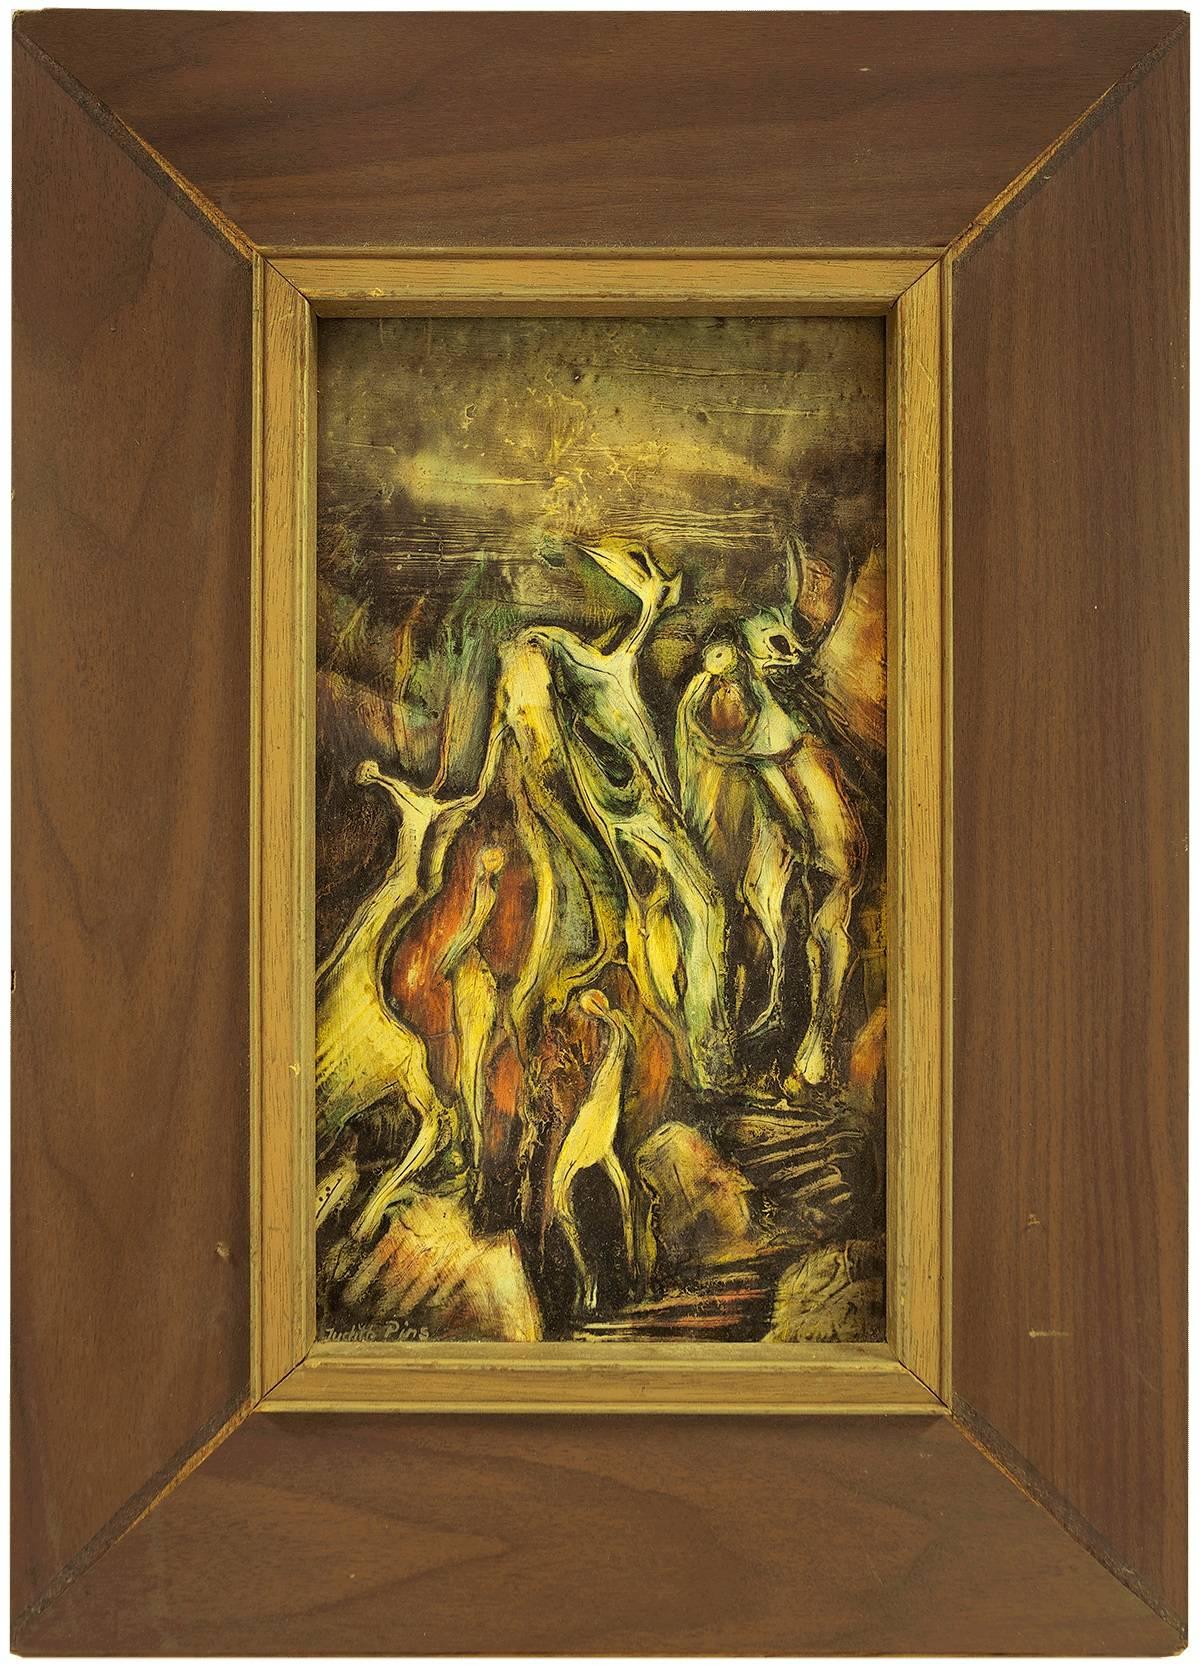 Abstract Painting Judith Pins - Peinture à l'huile expressionniste abstraite de l'artiste israélien « Danse de la scène »